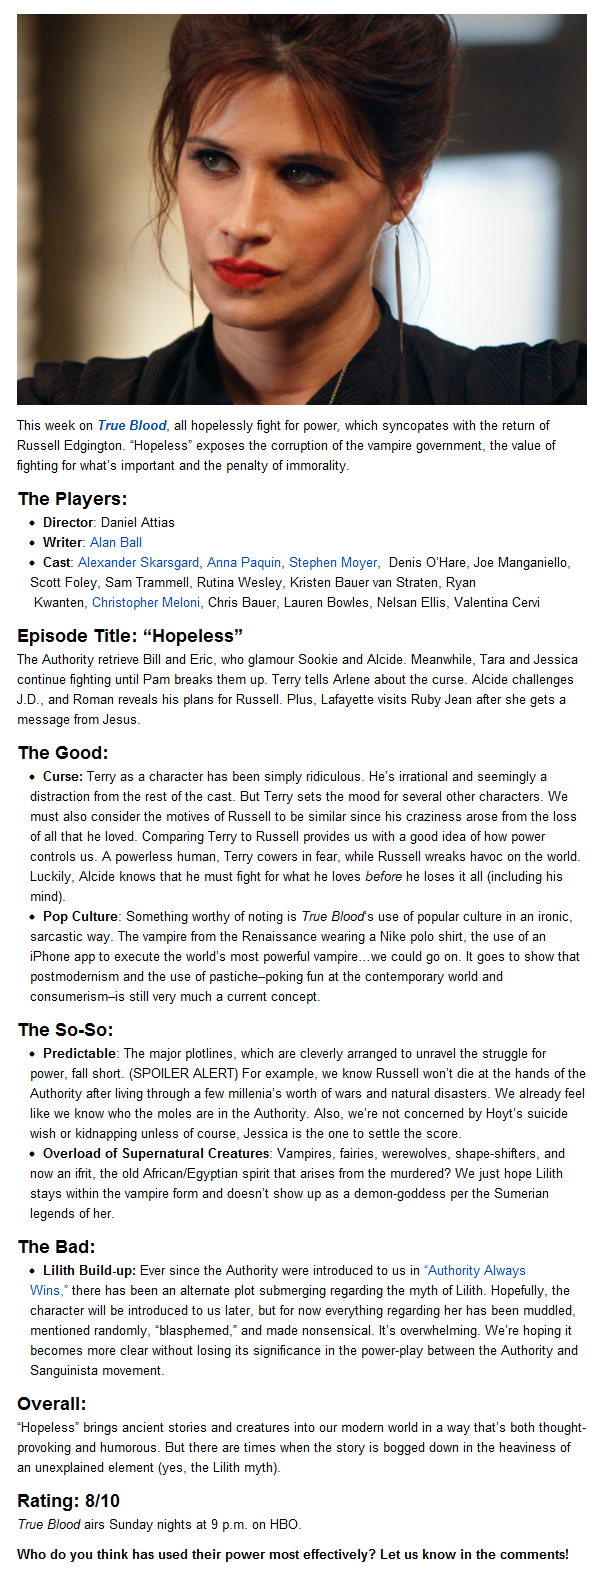 TV Review: True Blood: Hopeless (5.6)